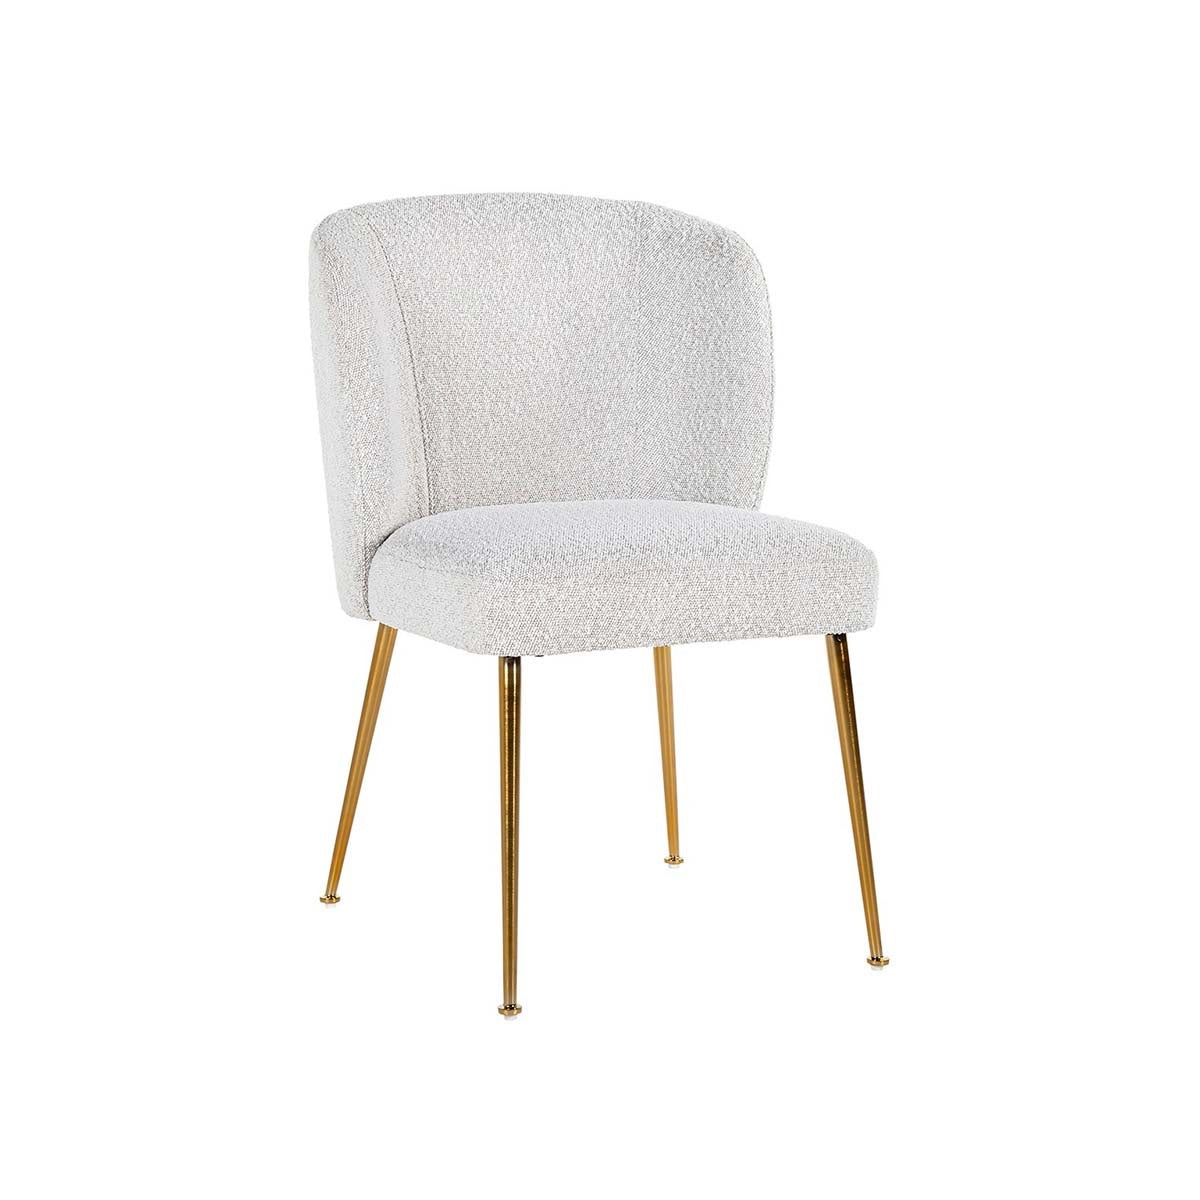 White Velvet Dining Chair - With Golden Legs